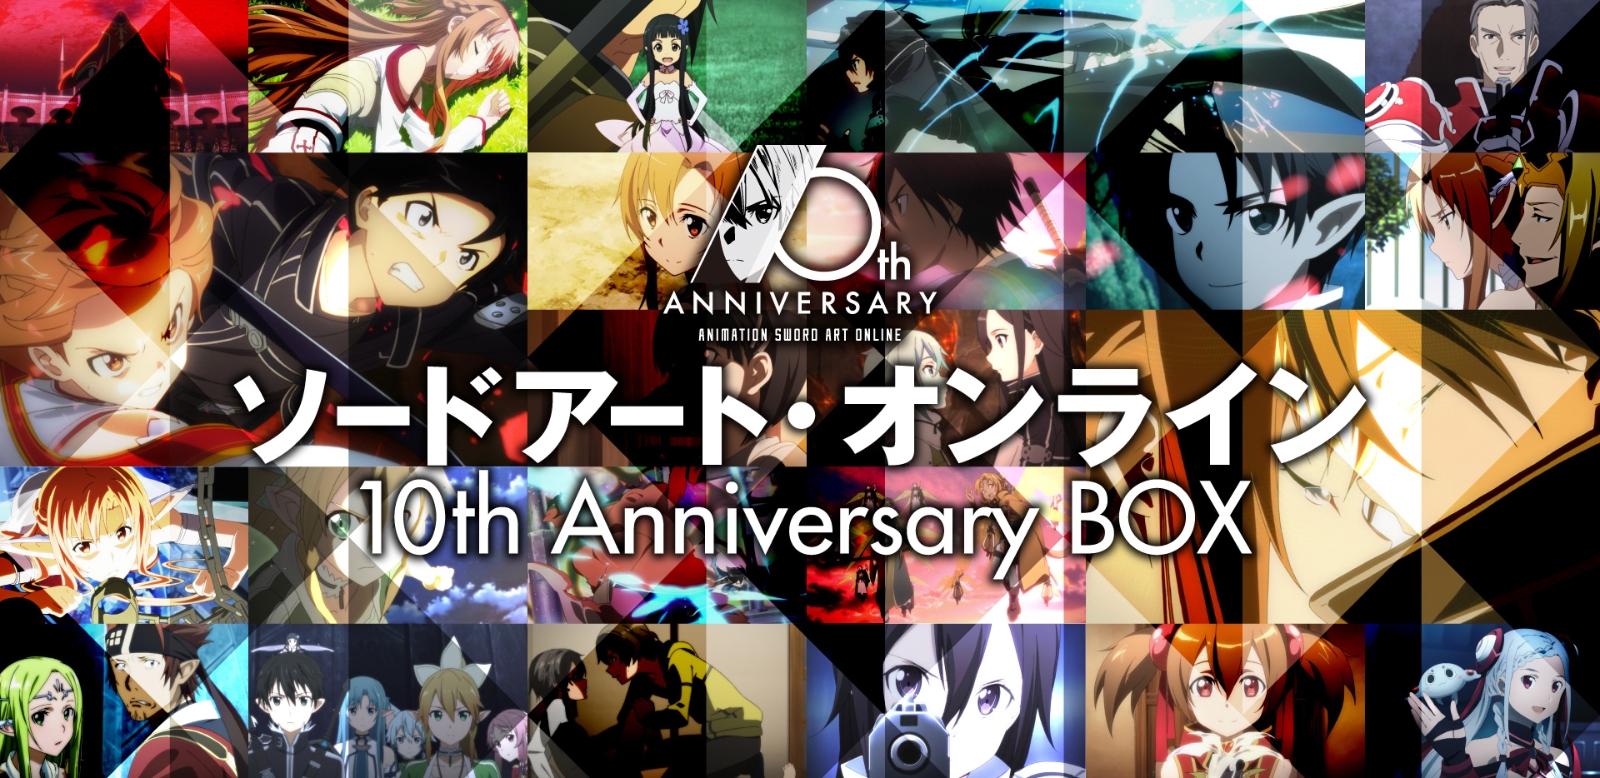 ソードアート・オンライン 10th Anniversary BOX【完全生産限定版】【Blu-ray】画像